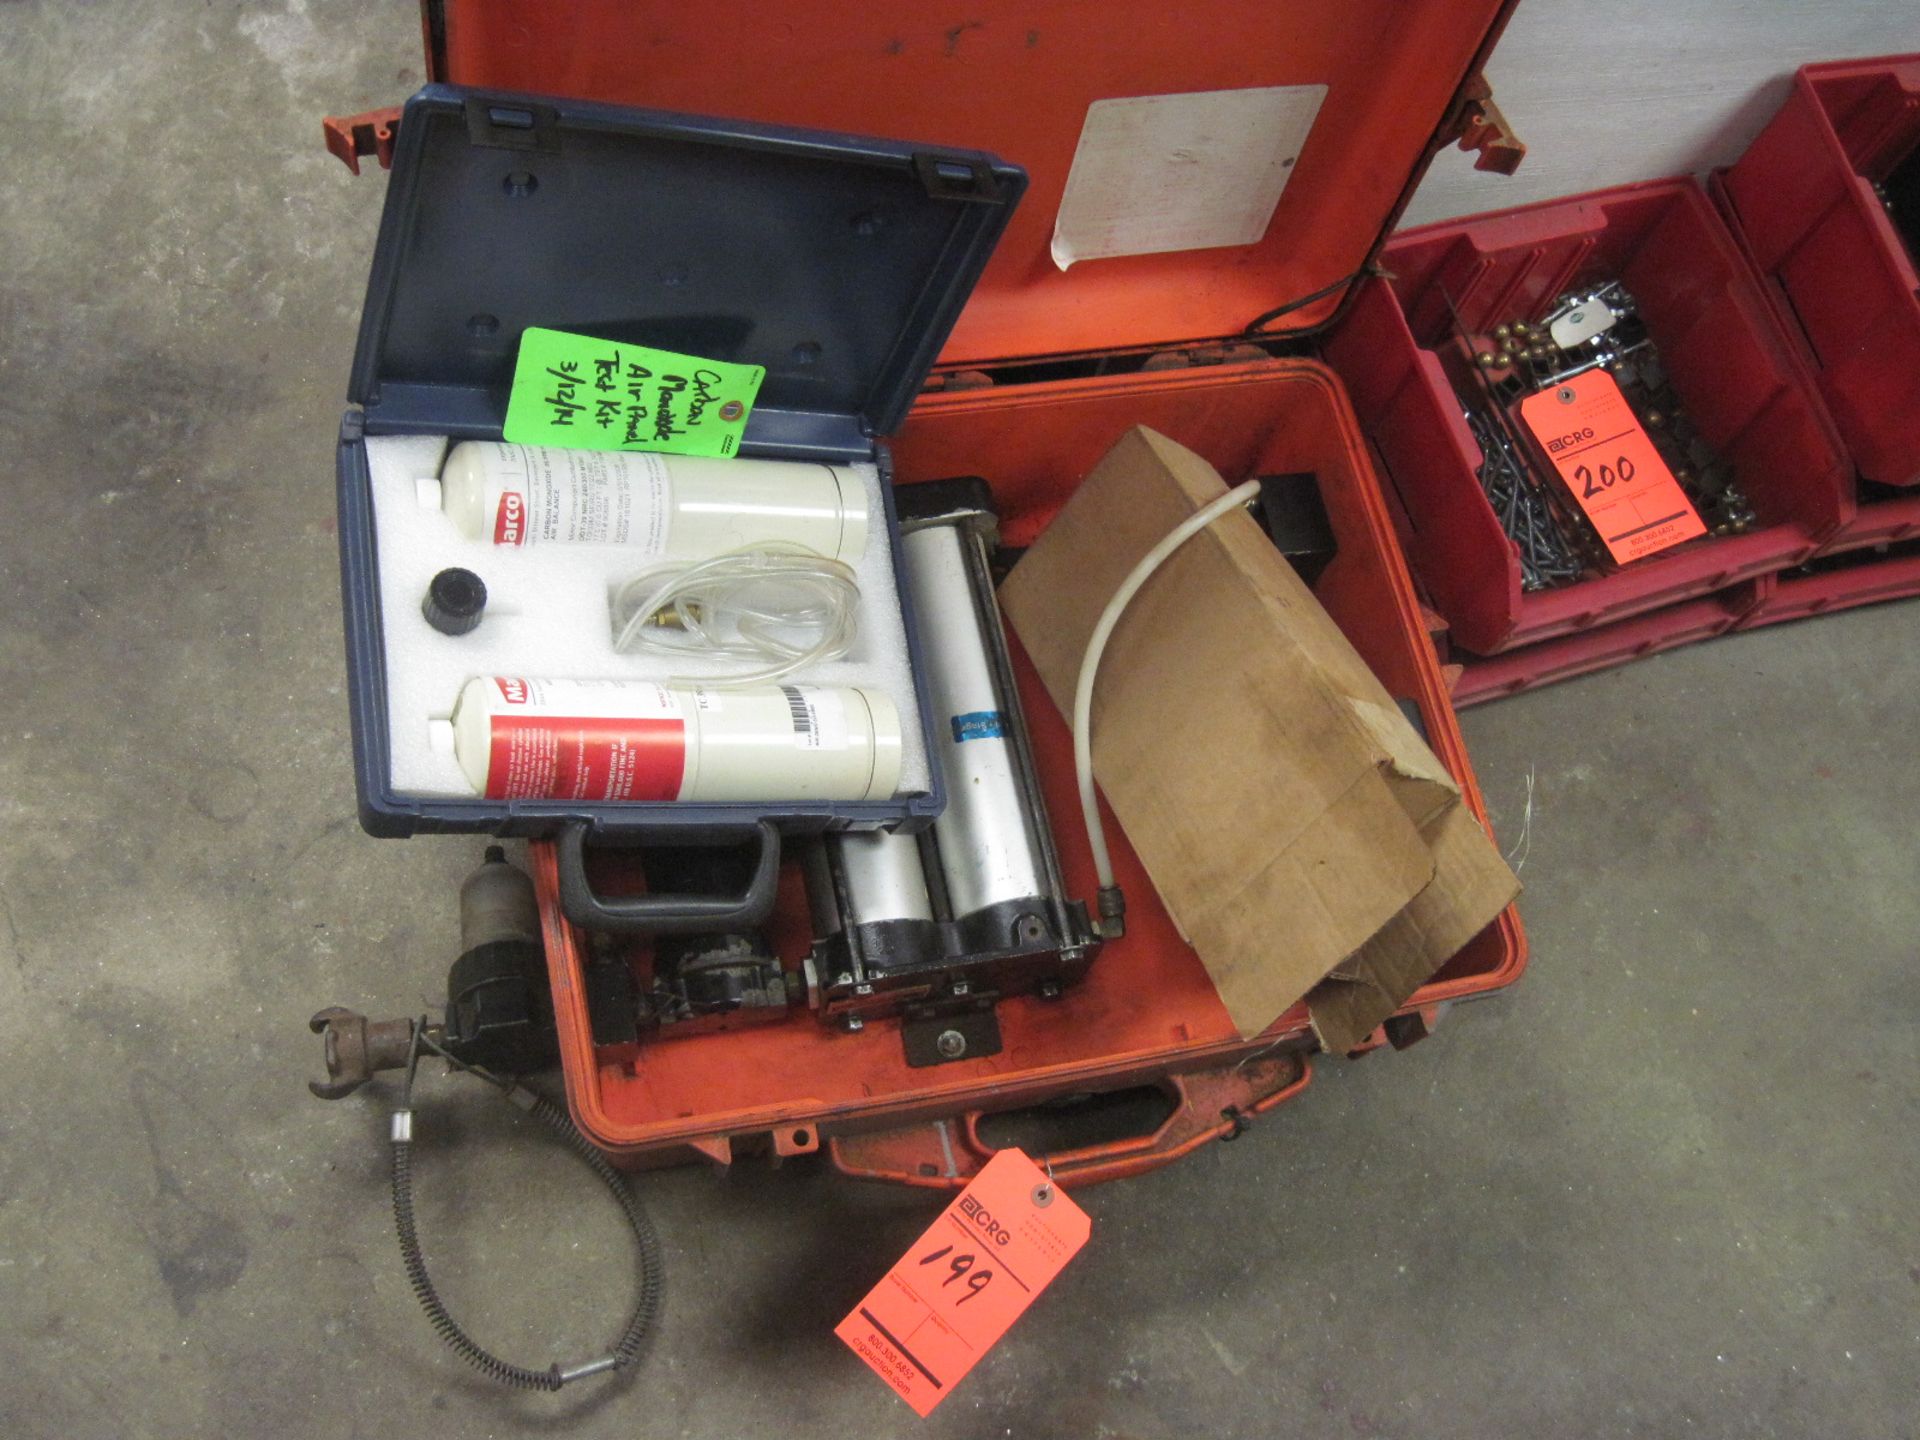 Carbon monoxide test kit with case